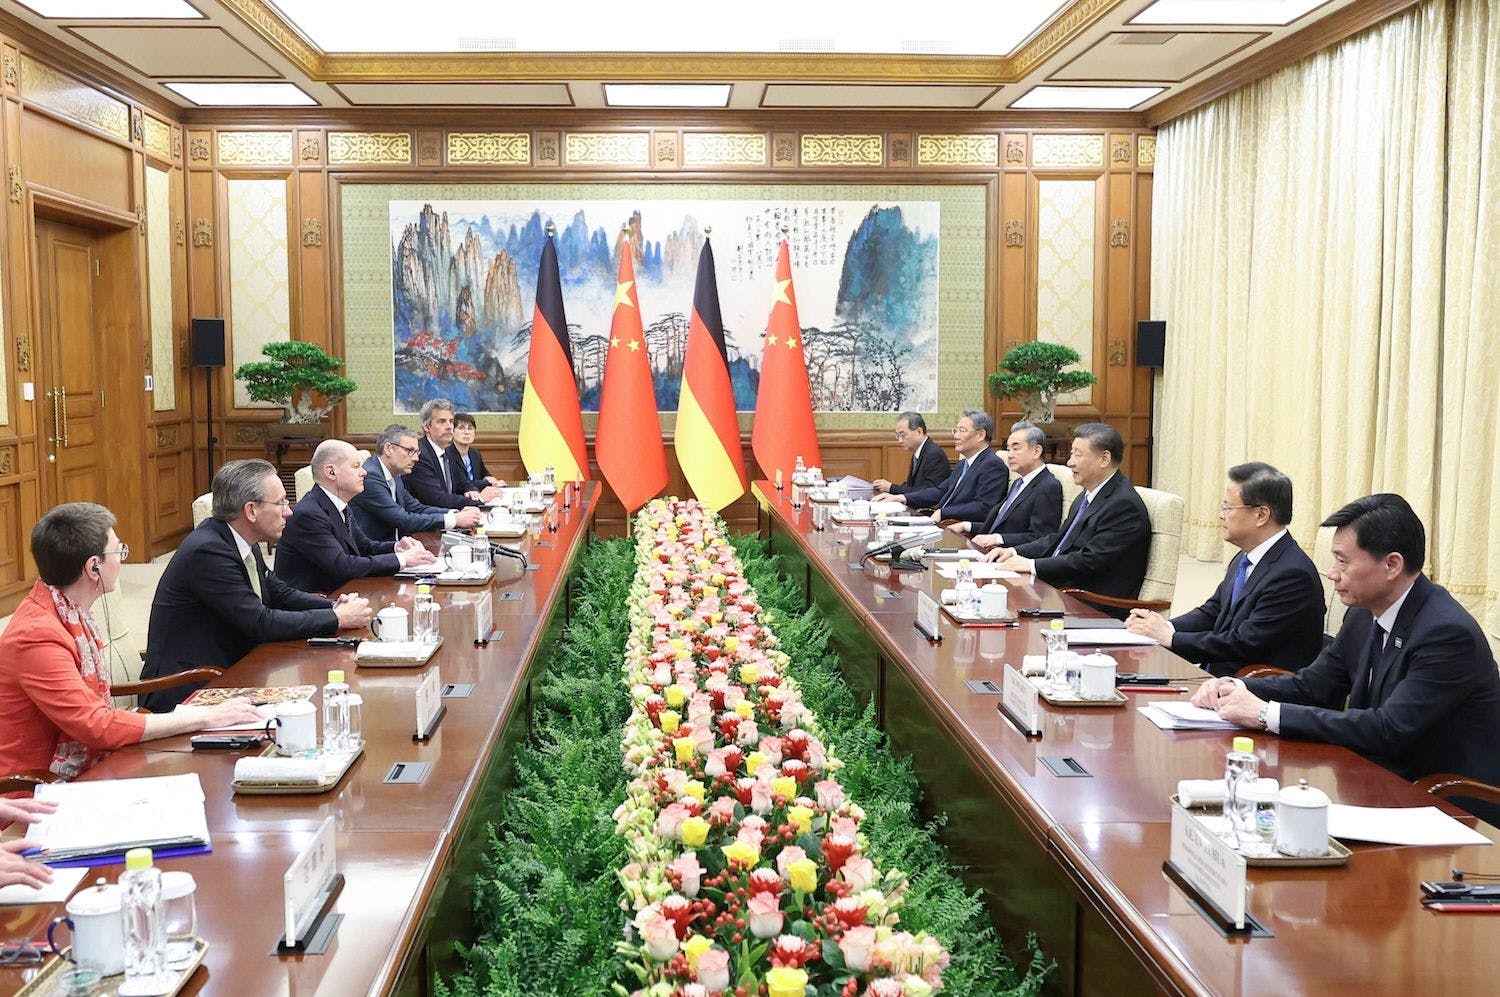 China Deutschland, Kooperation, Fortschritt, Zusammenarbeit: Der chinesische Staatspräsident Xi Jinping trifft den deutschen Bundeskanzler Olaf Scholz im Diaoyutai State Guesthouse in der chinesischen Hauptstadt Peking